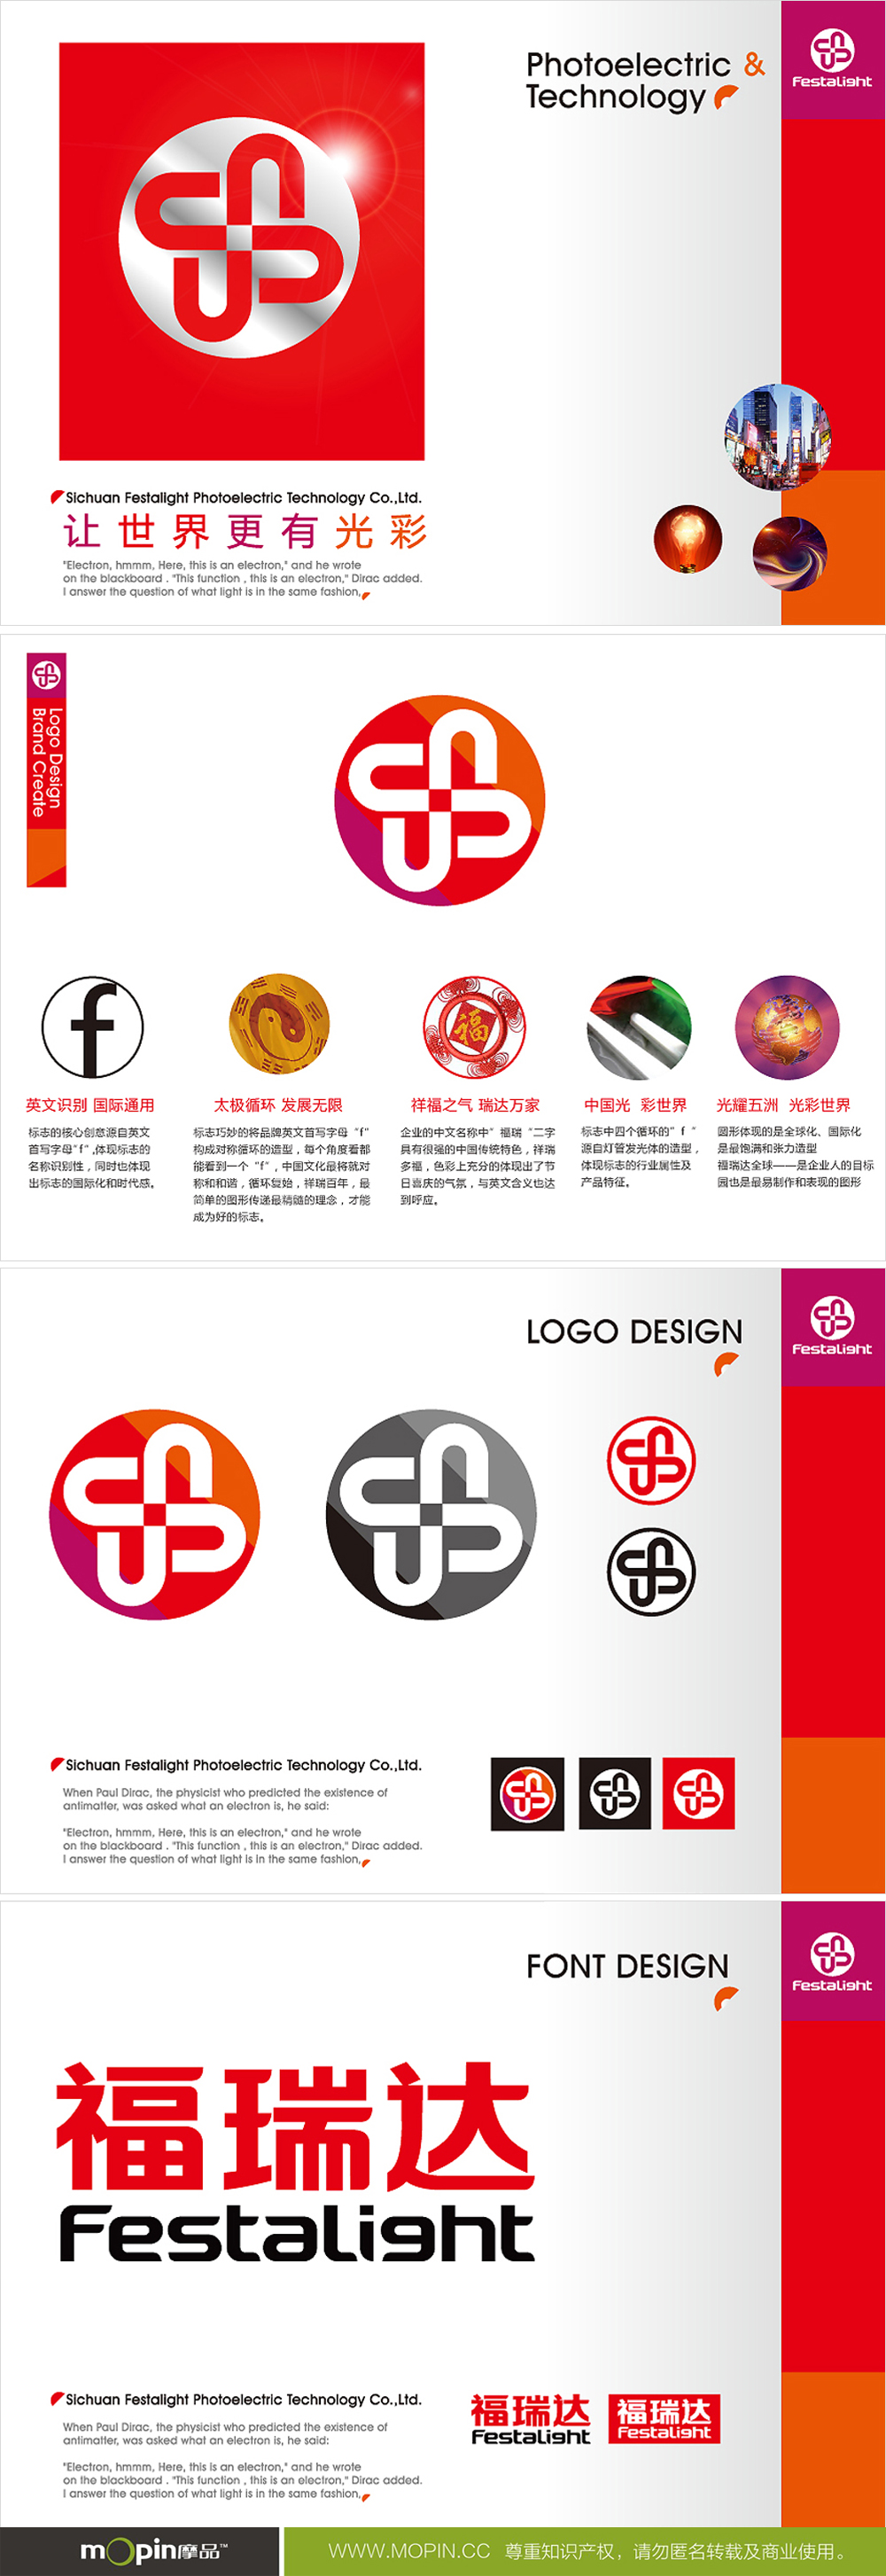 成都摩品,福瑞达光电，企业标志设计,公司VI设计,公司logo设计,企业画册设计,企业网页设计,www.mopin.cc 